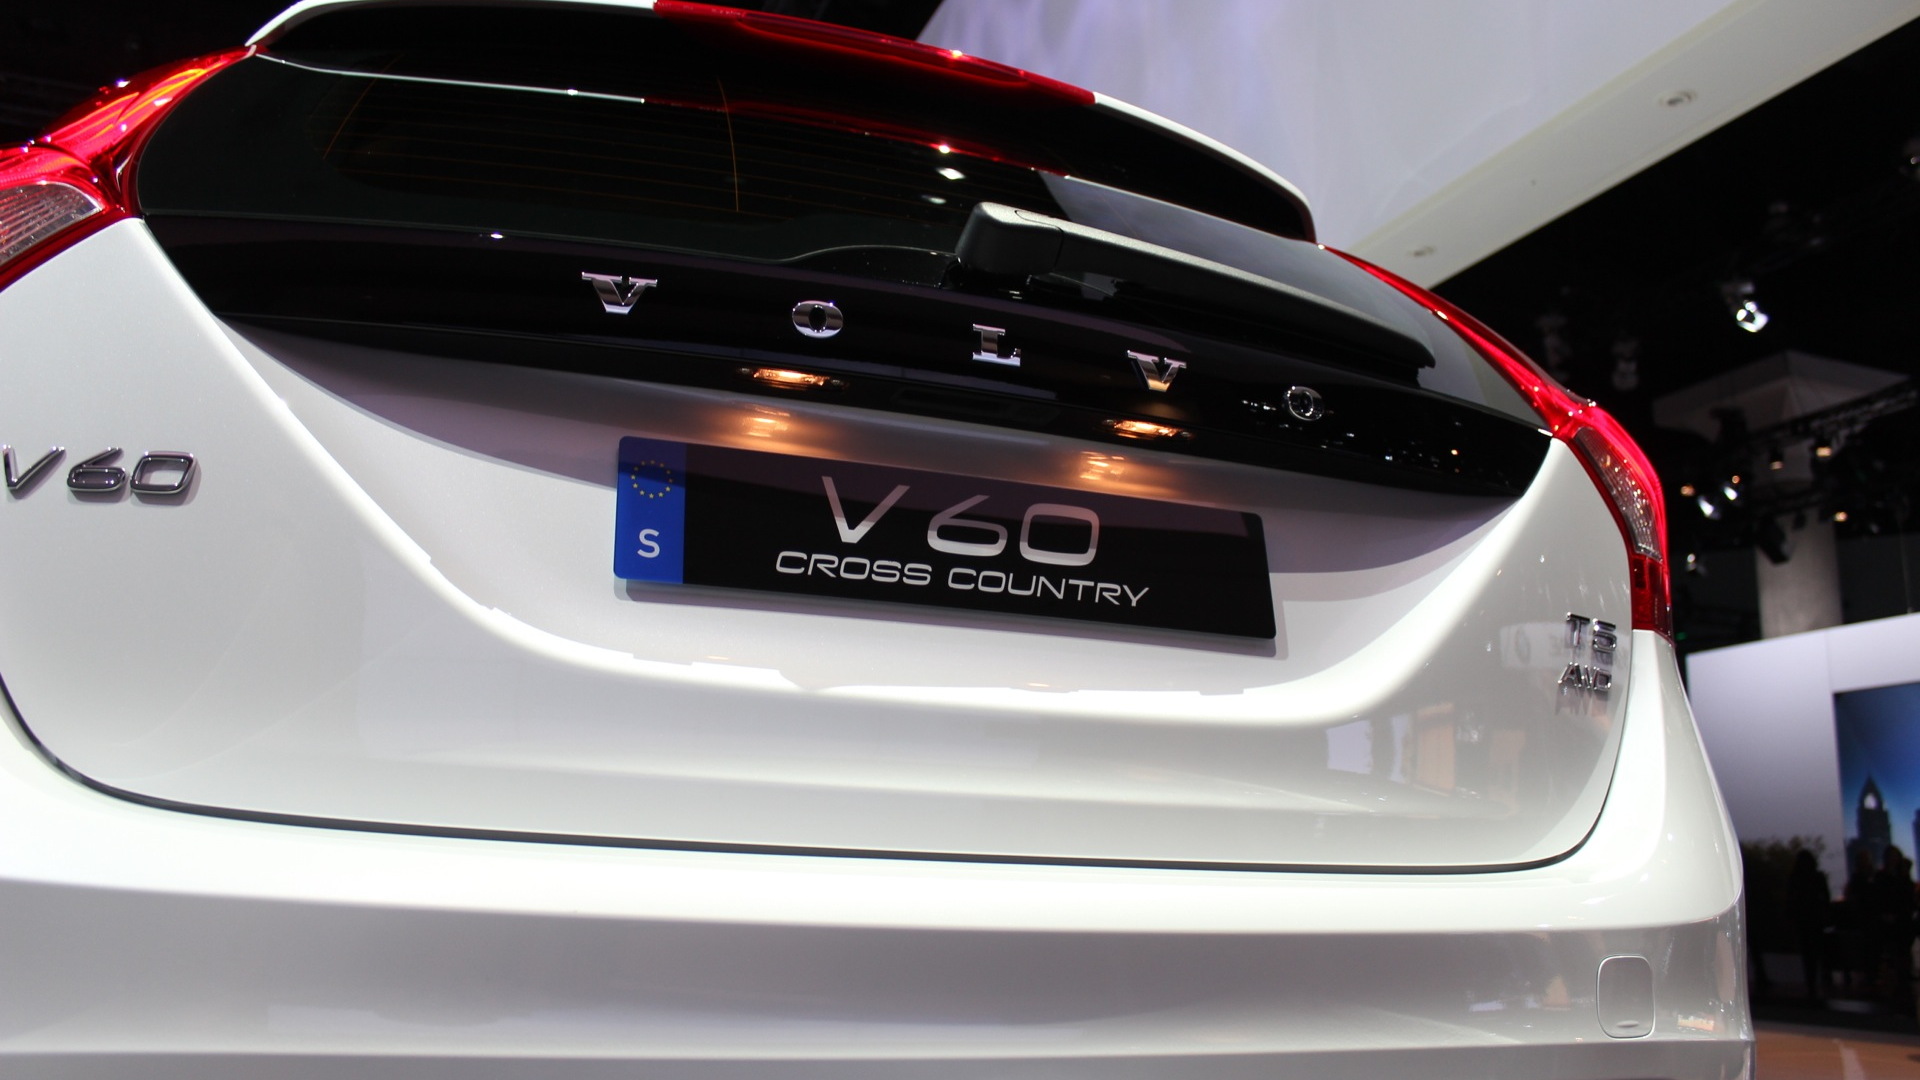 2015 Volvo V60 Cross Country  -  2014 Los Angeles Auto Show live photos